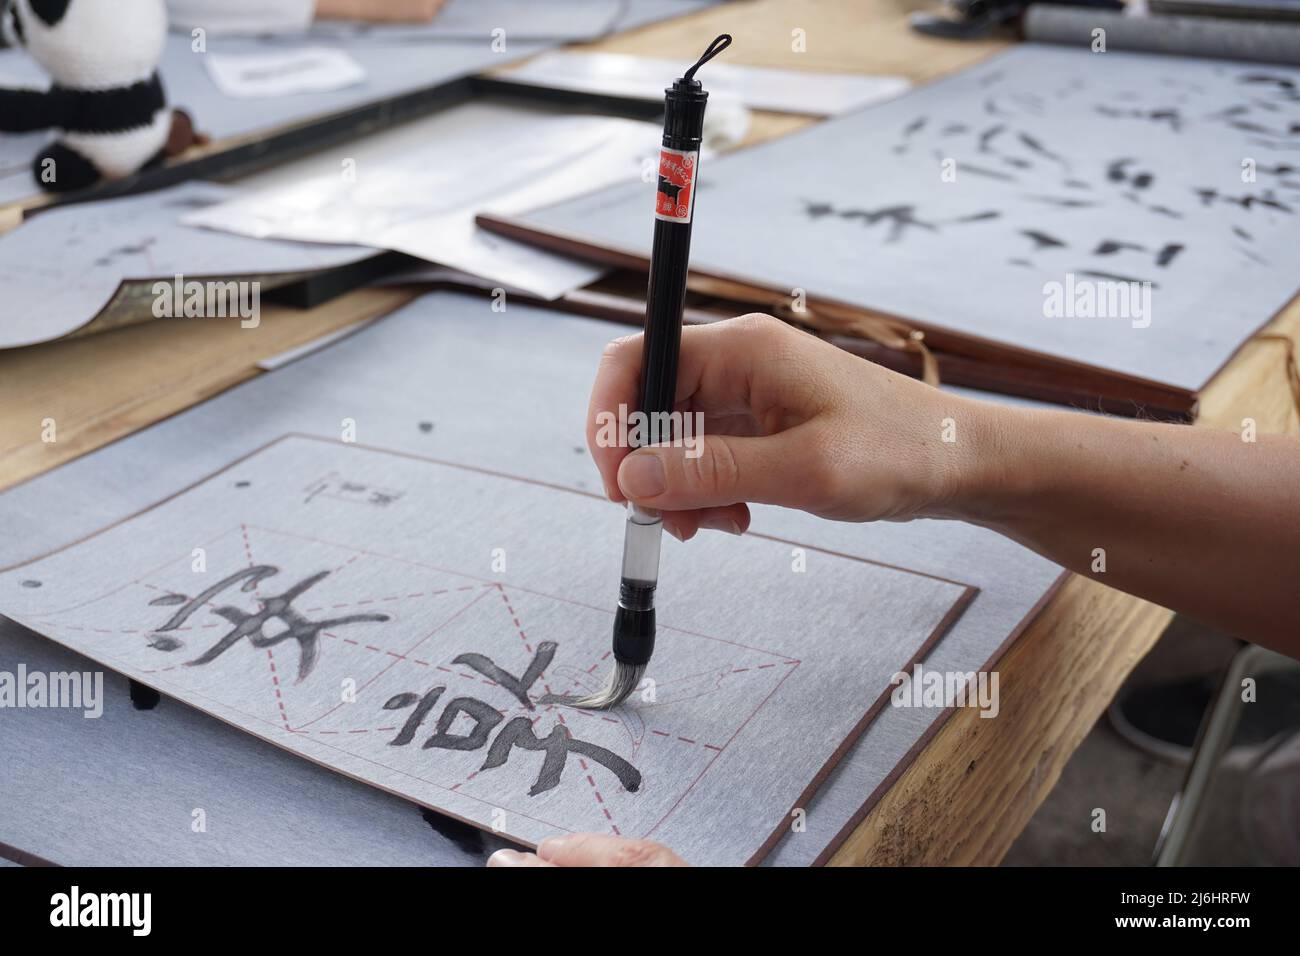 Shodo calligraphie japonaise processus d'écriture apprentissage, étude des hiéroglyphes Banque D'Images